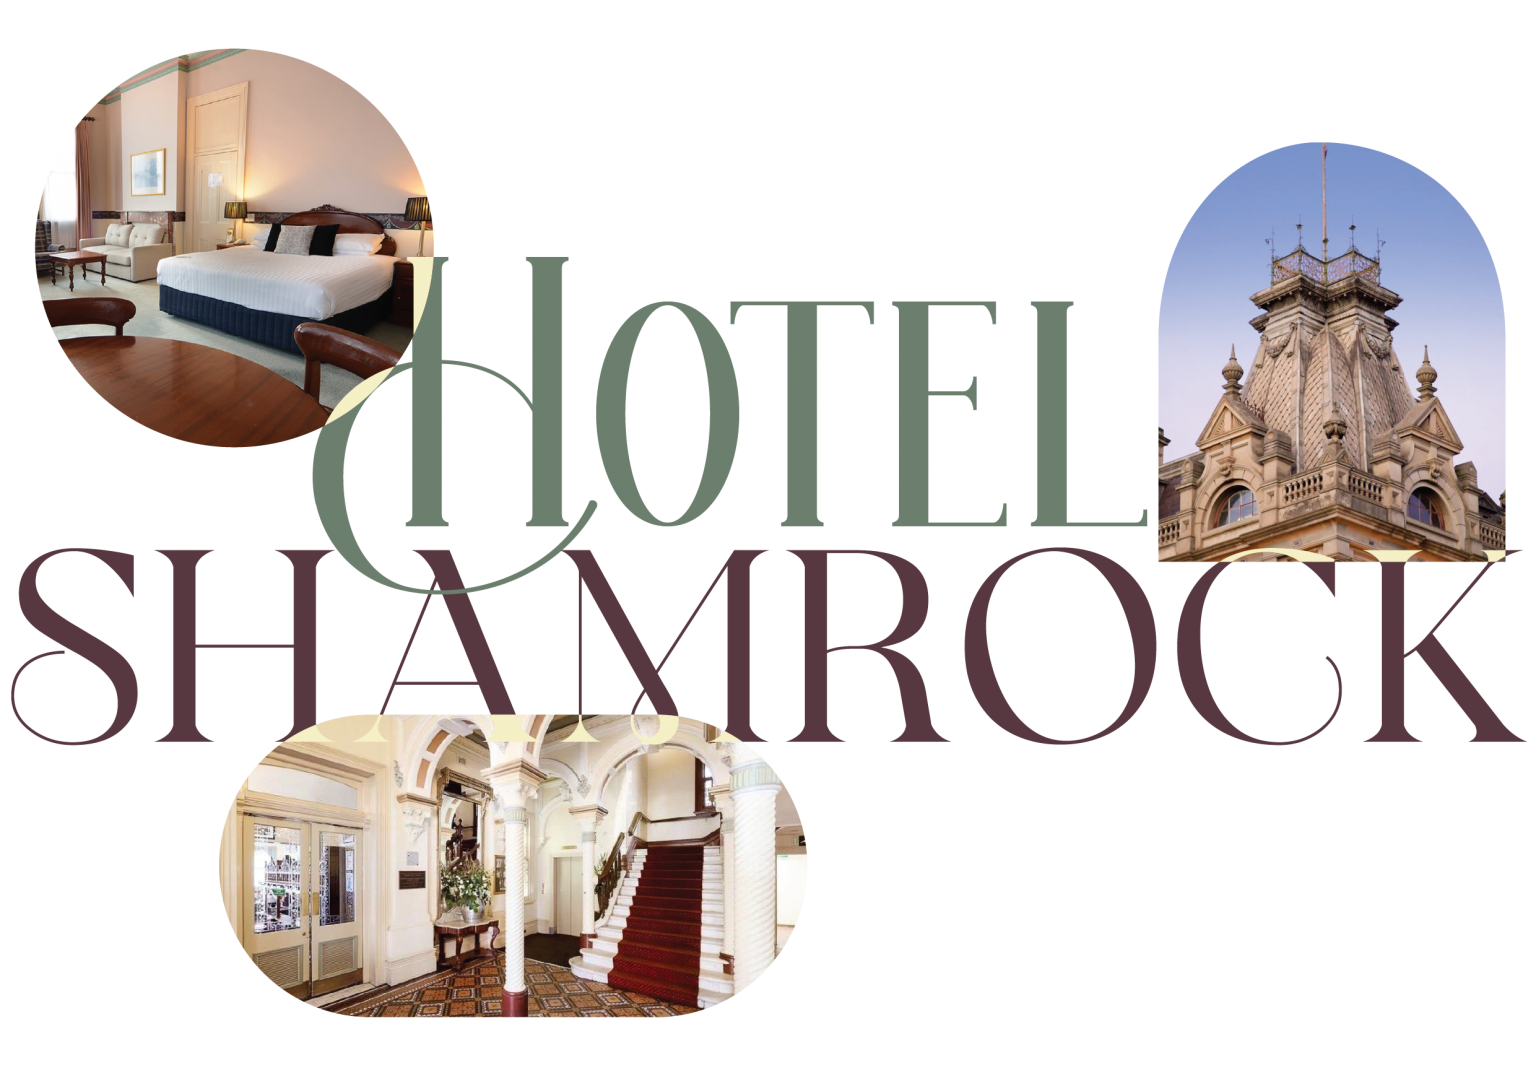 (c) Hotelshamrock.com.au